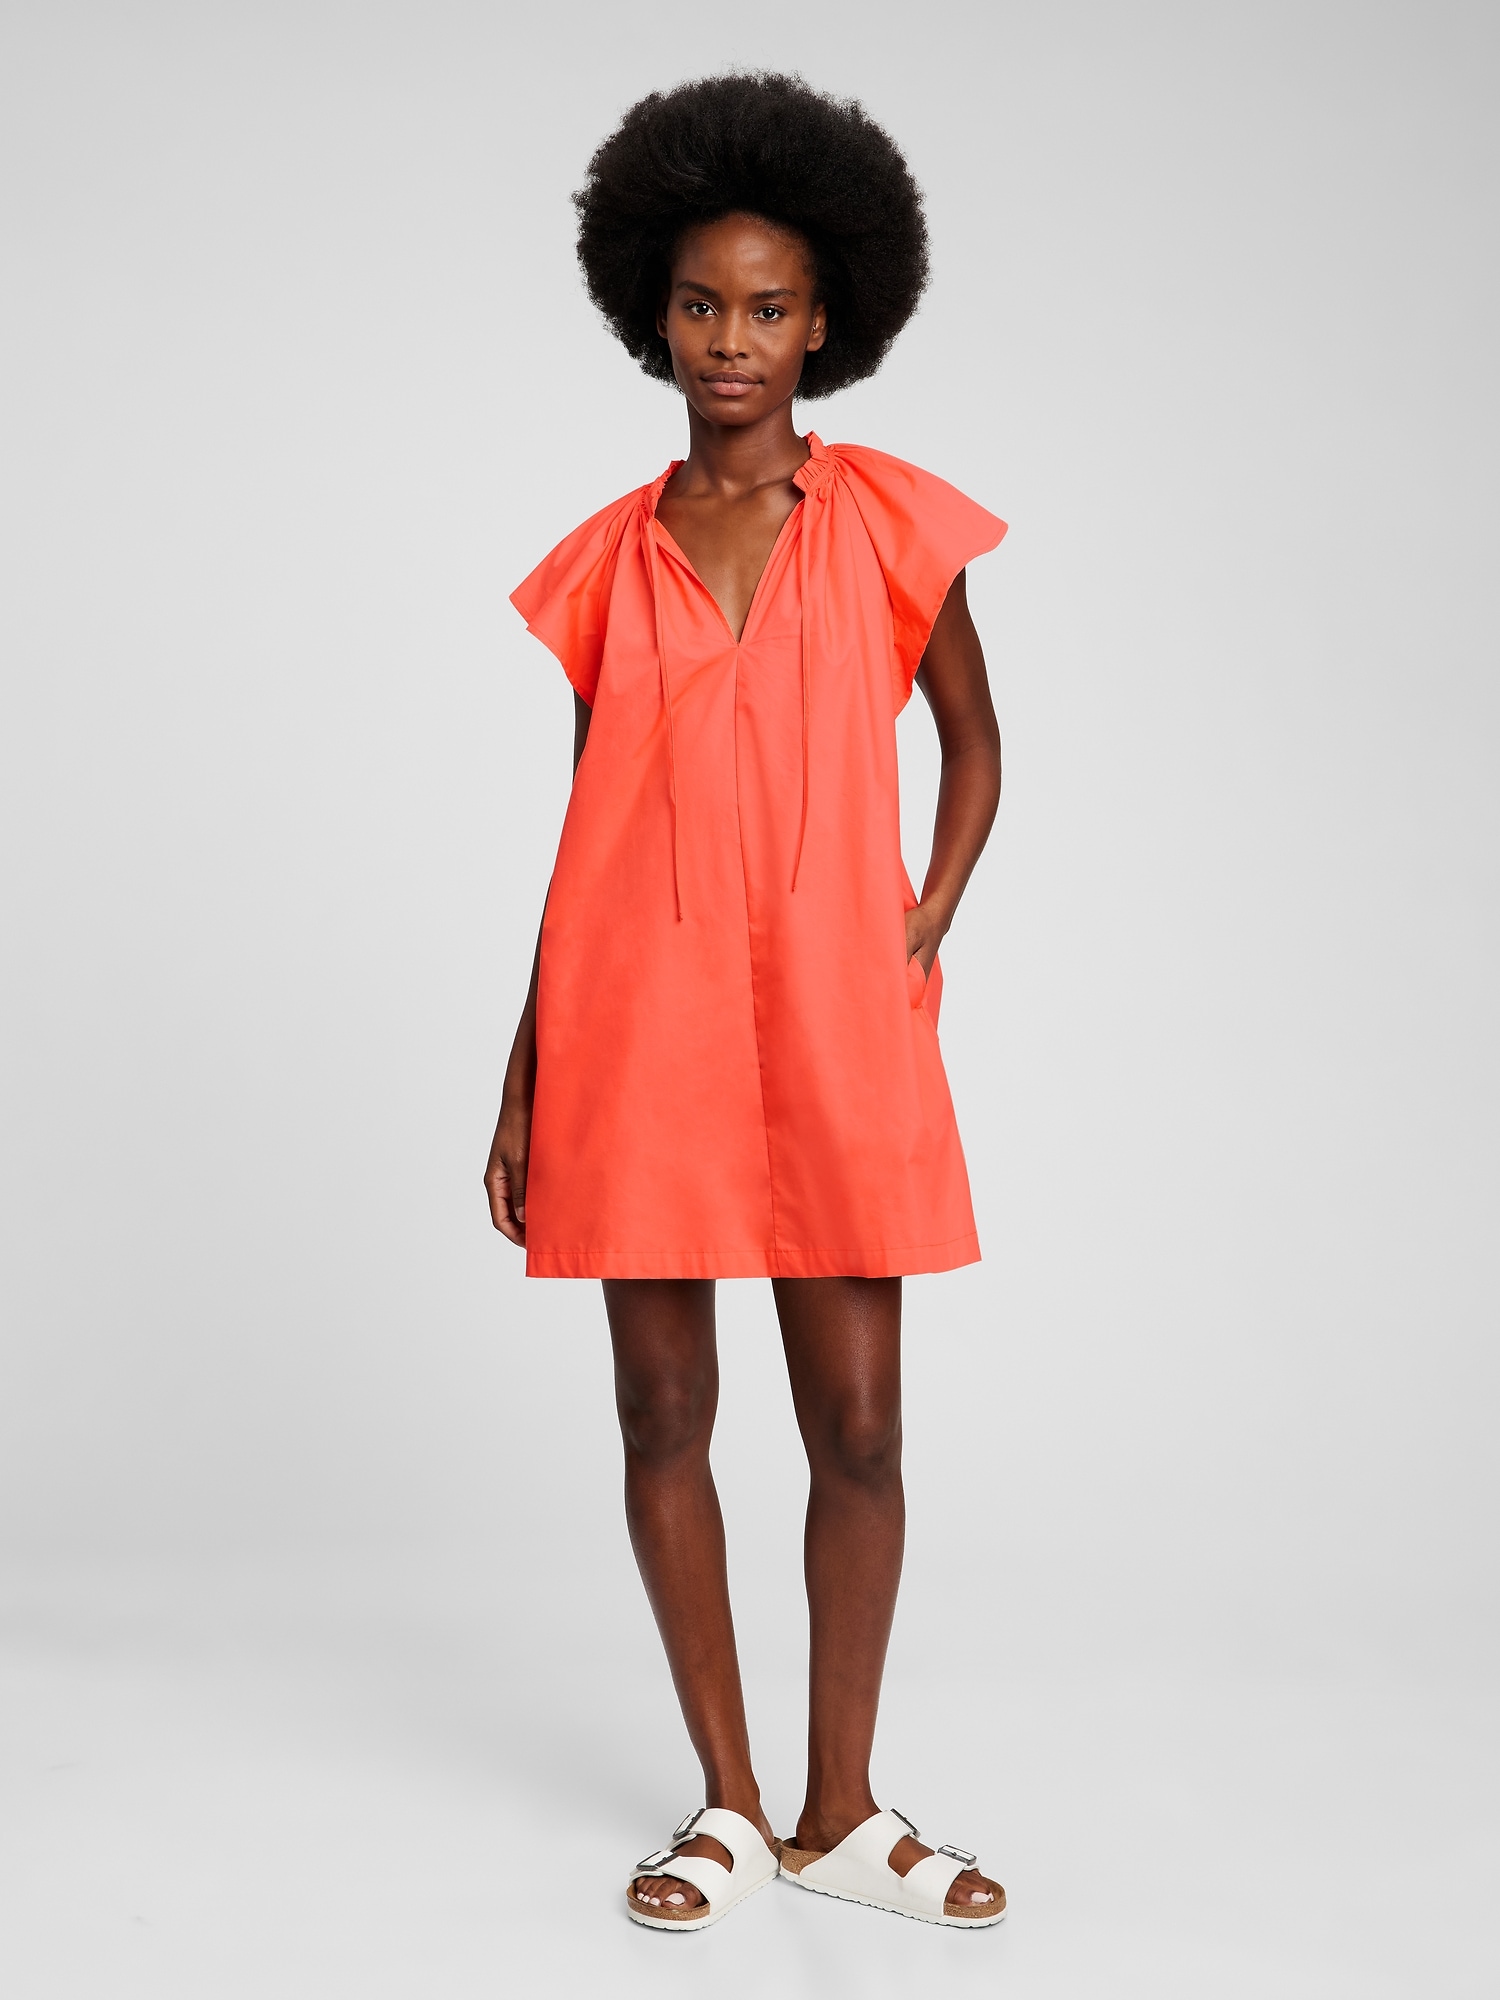 Flutter Sleeve Dress Wholesale Online, Save 65% | jlcatj.gob.mx